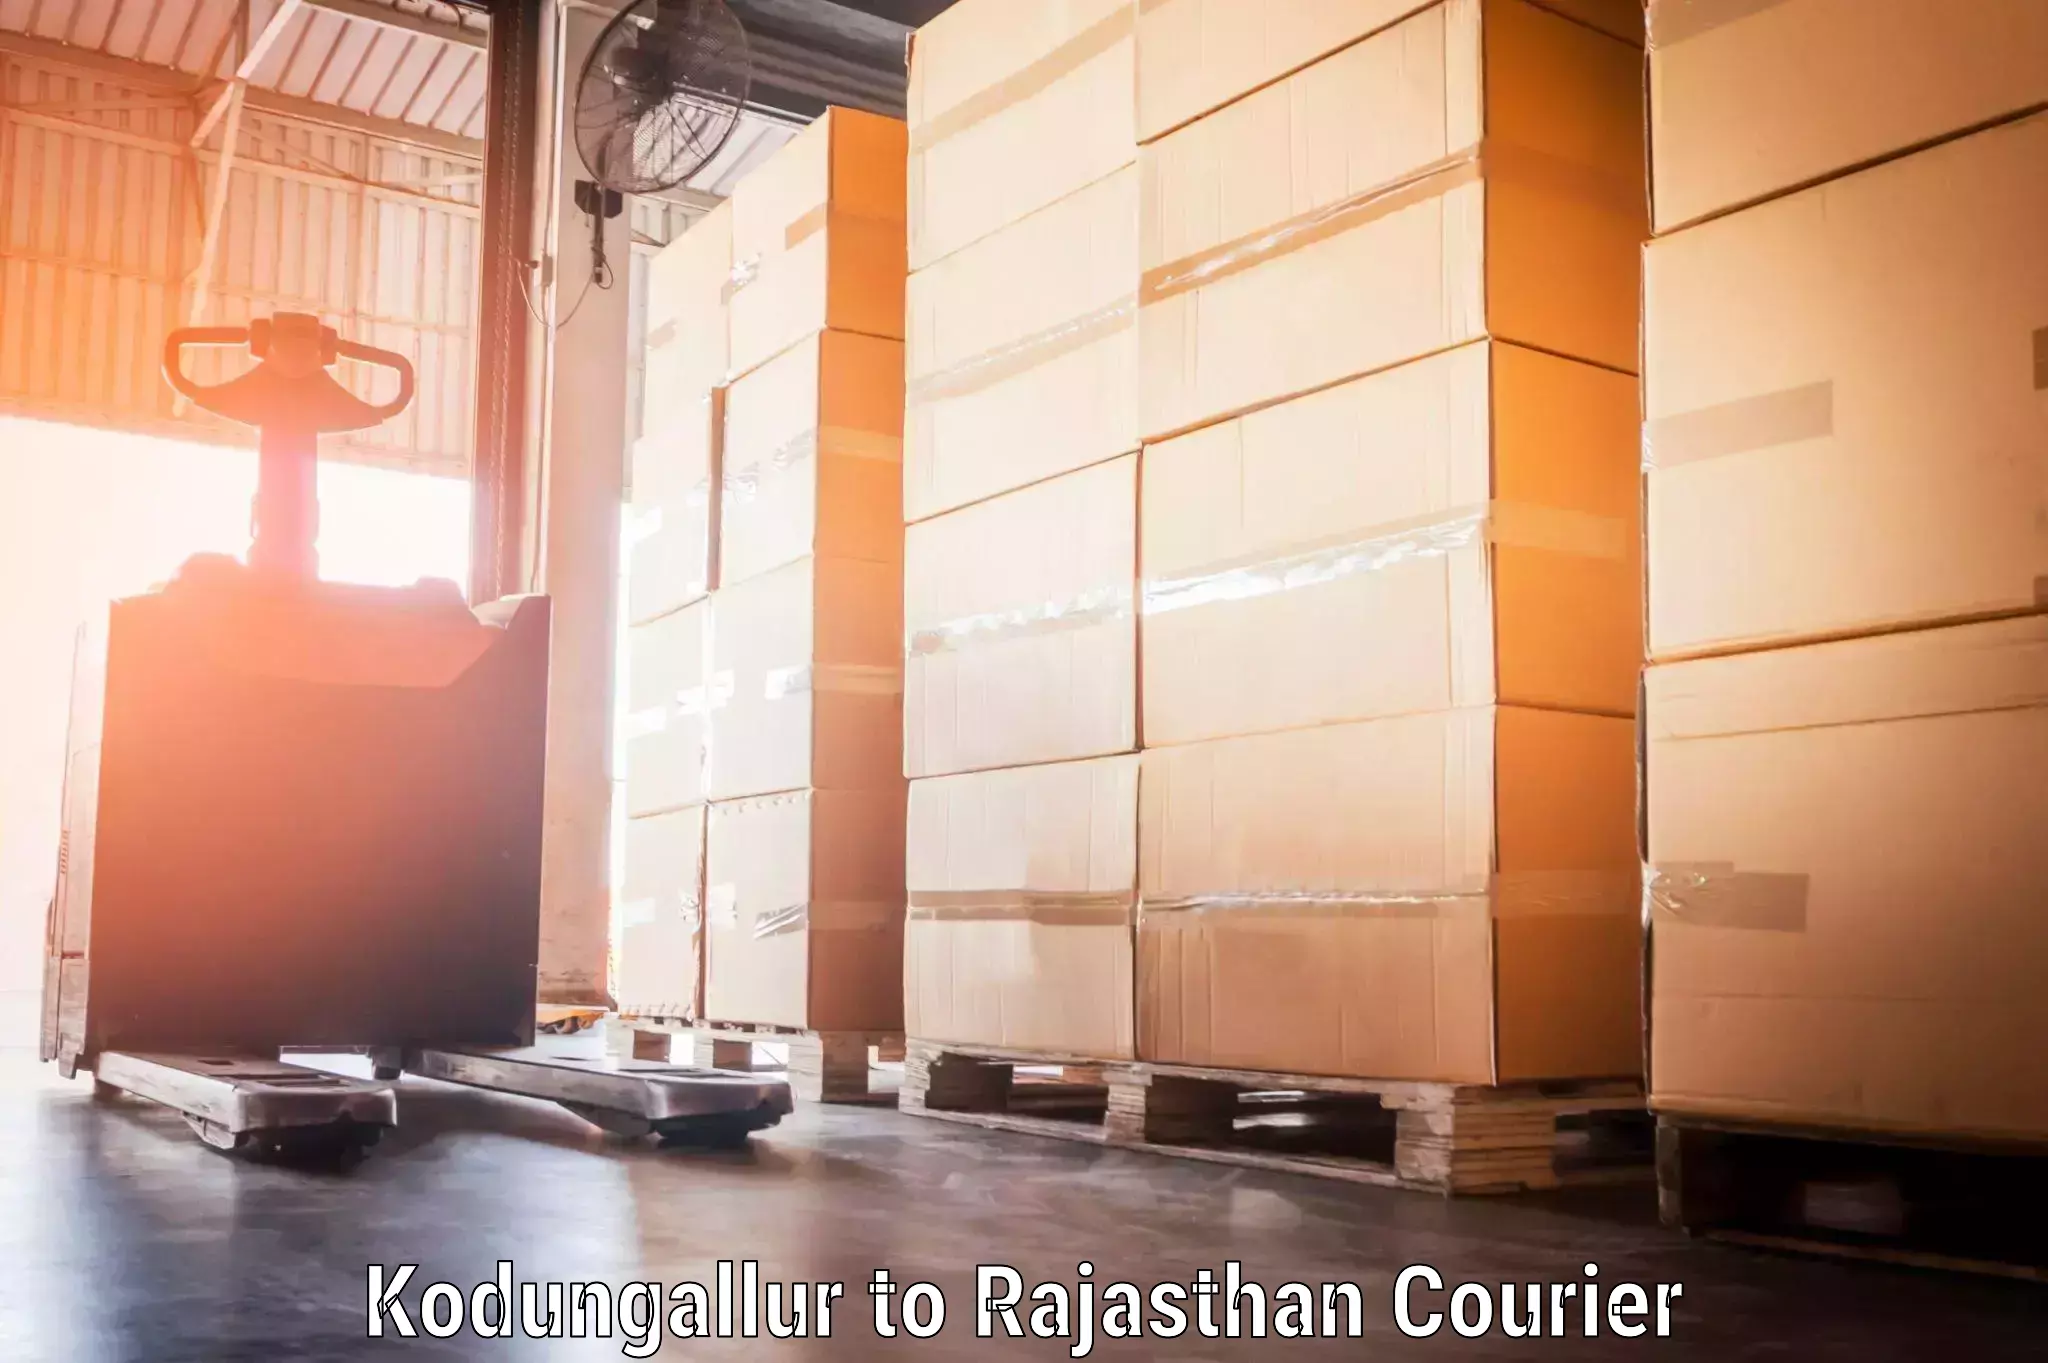 Baggage shipping logistics Kodungallur to Rajasthan